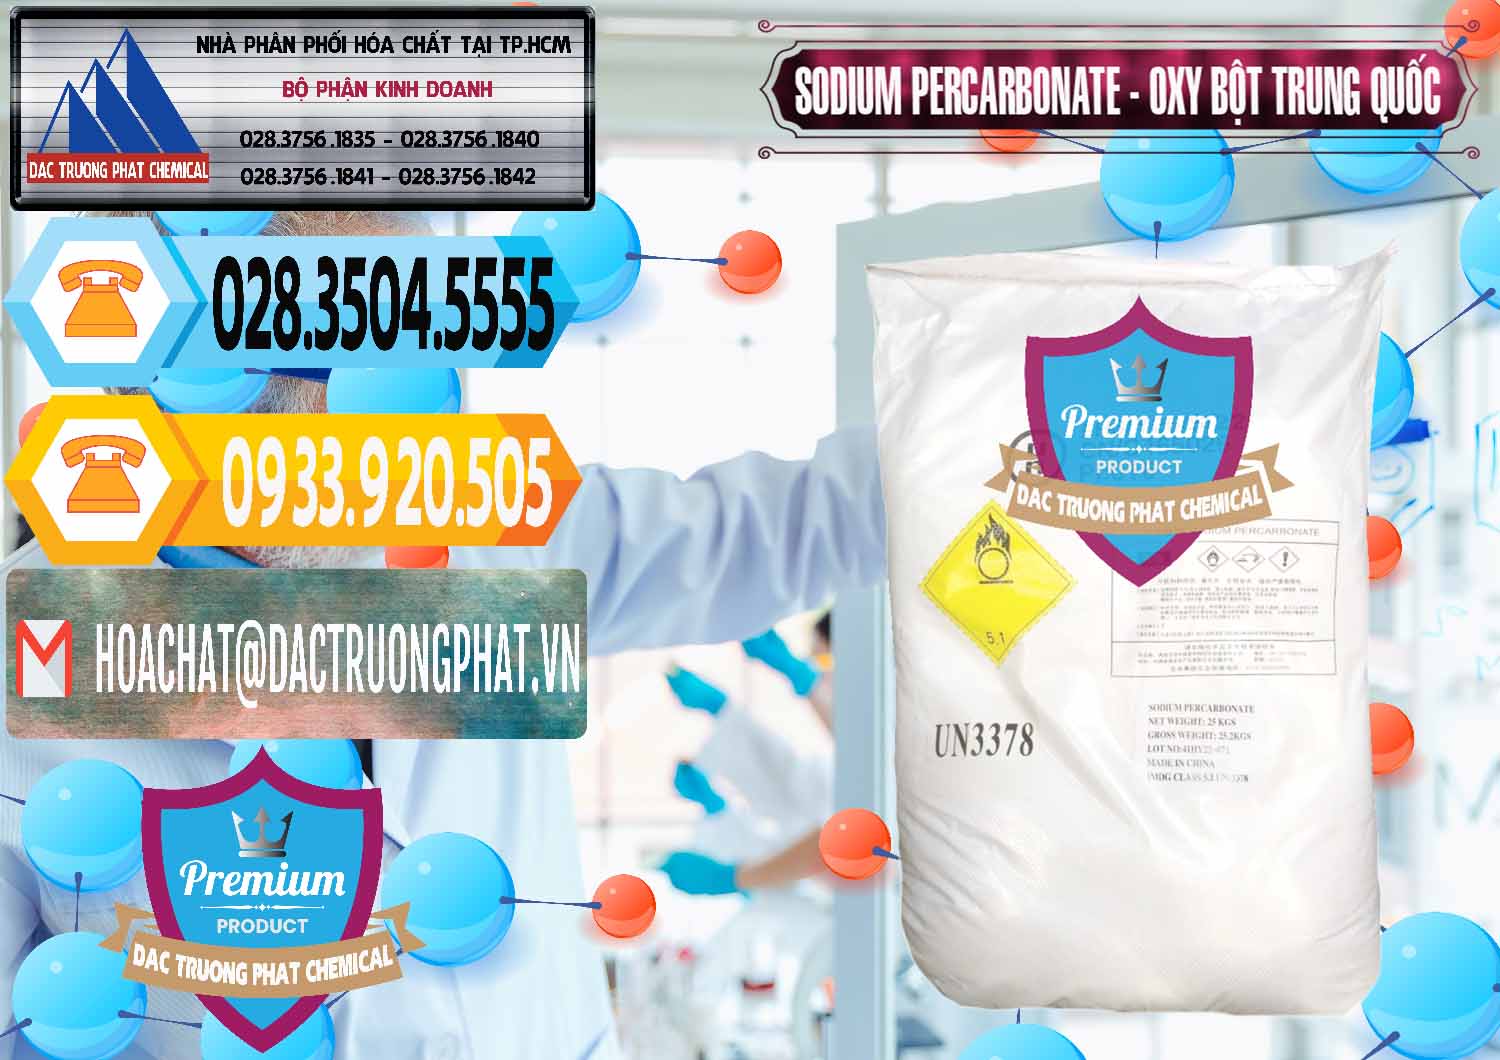 Chuyên kinh doanh & bán Sodium Percarbonate Dạng Bột Trung Quốc China - 0390 - Đơn vị chuyên nhập khẩu _ phân phối hóa chất tại TP.HCM - hoachattayrua.net